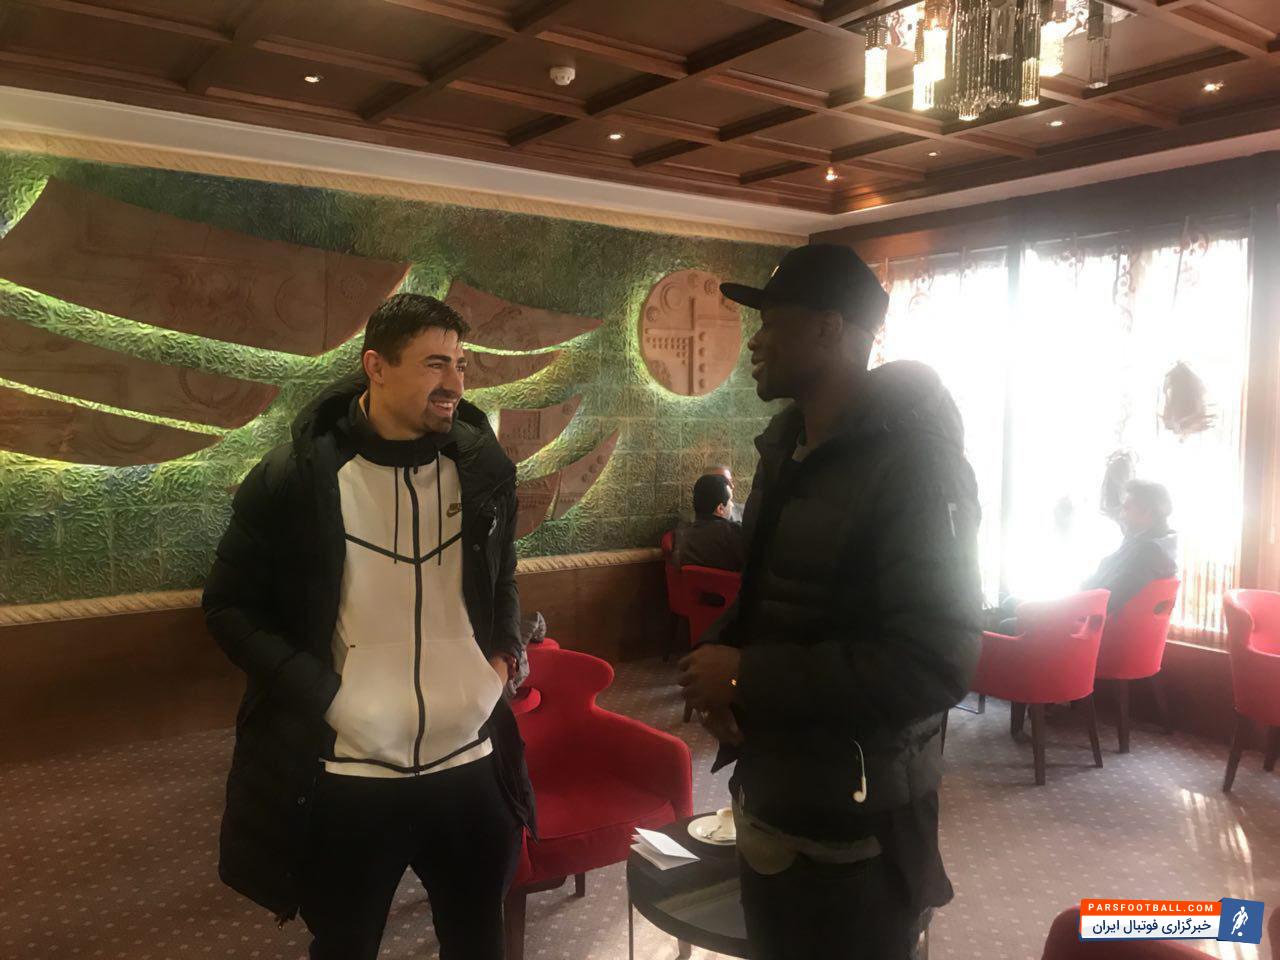 بویان نایدنوف و مامه بابا تیام  ، دو بازیکن جدید استقلال که هم اکنون در هتل المپیک اسکان داده شده اند امروز در لابی این هتل دیدار صمیمانه ای با هم داشتند.